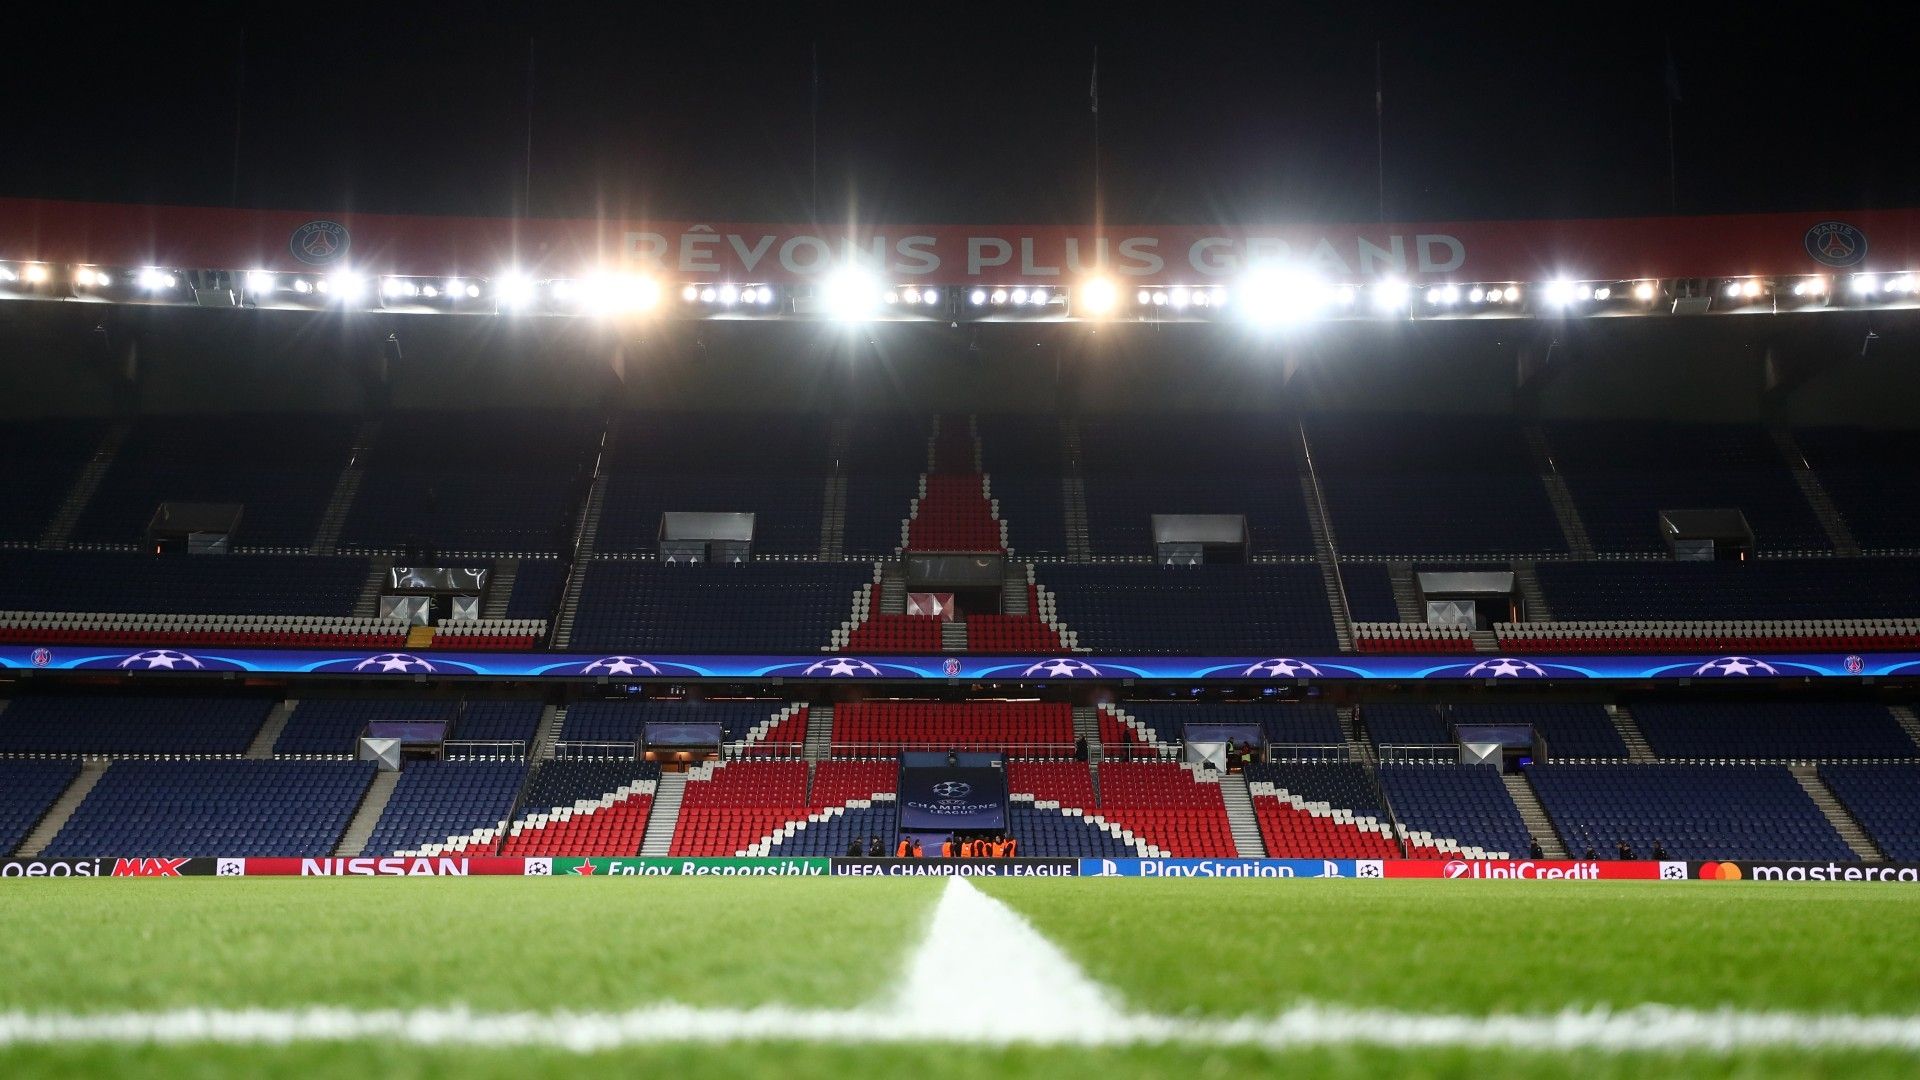 PSG set to LEAVE Parc de Princes following spat with Paris mayor over  stadium's sale | Goal.com US